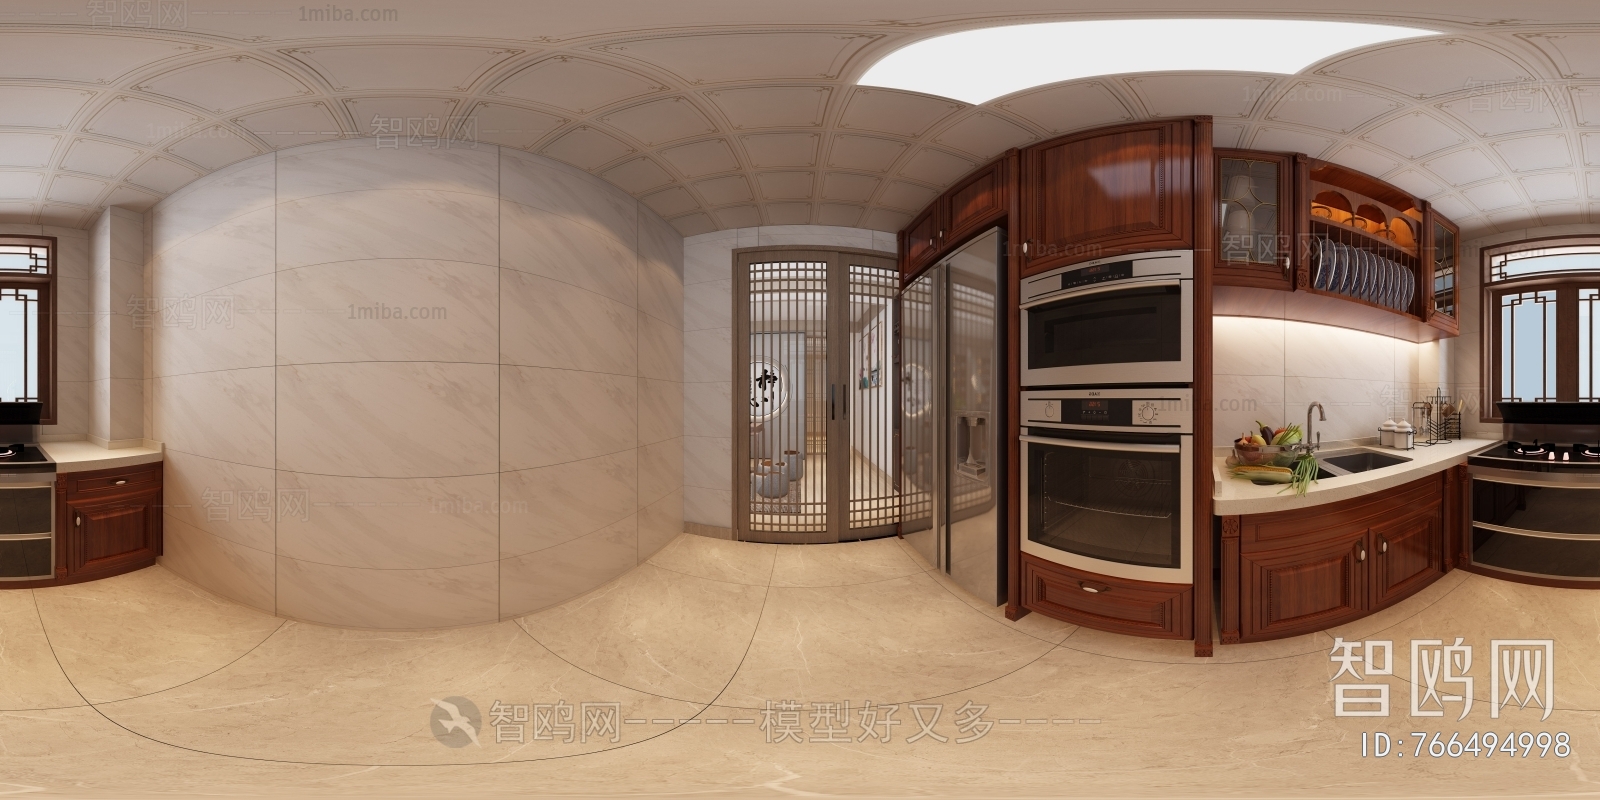 全景-新中式厨房+茶室